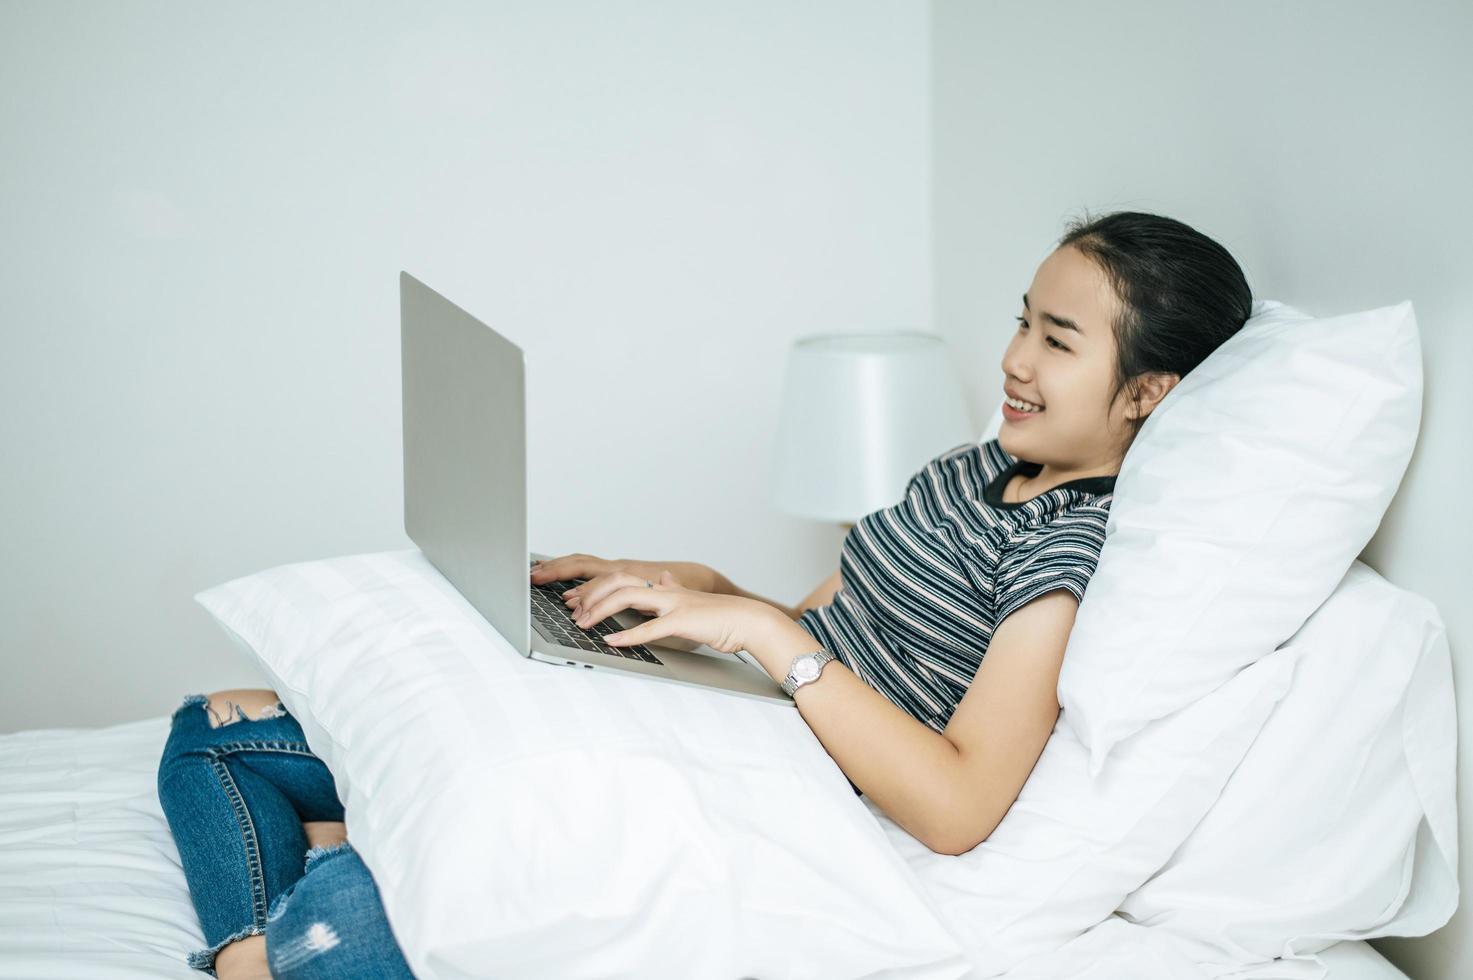 eine Frau in einem gestreiften Hemd spielt auf ihrem Laptop auf ihrem Bett foto